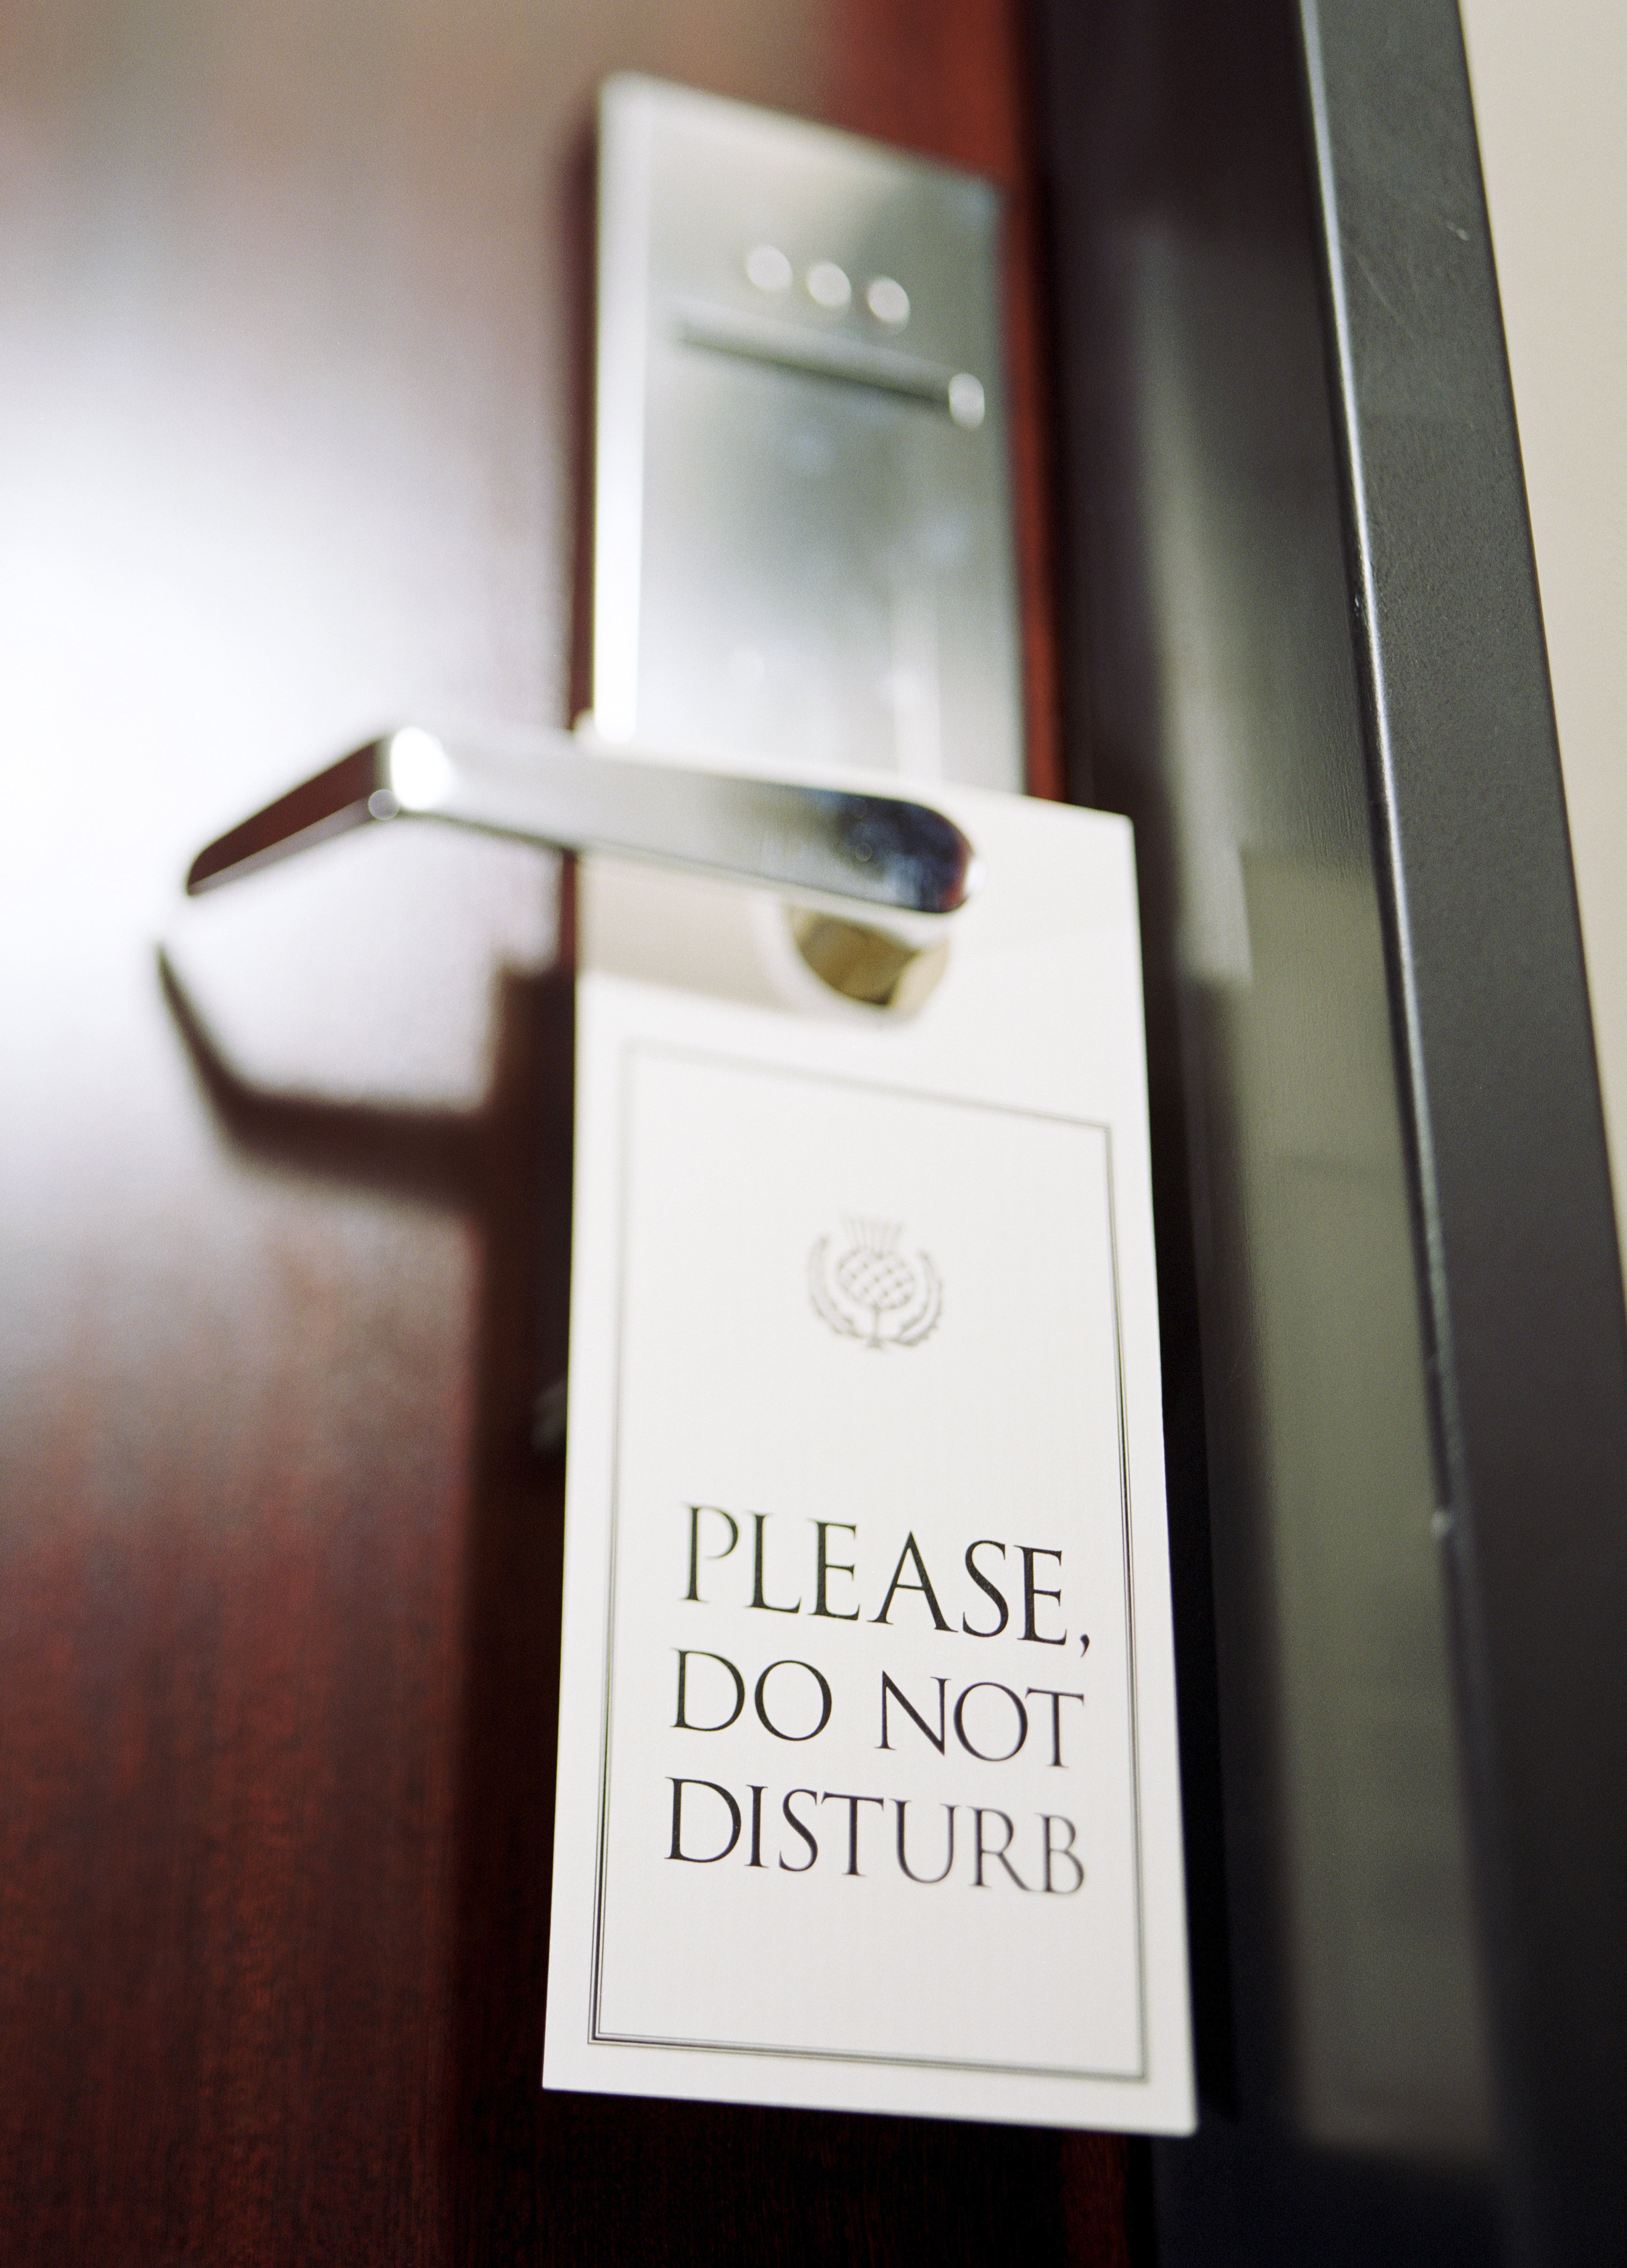 Do not disturb sign hanging from hotel door handle (selective focus)